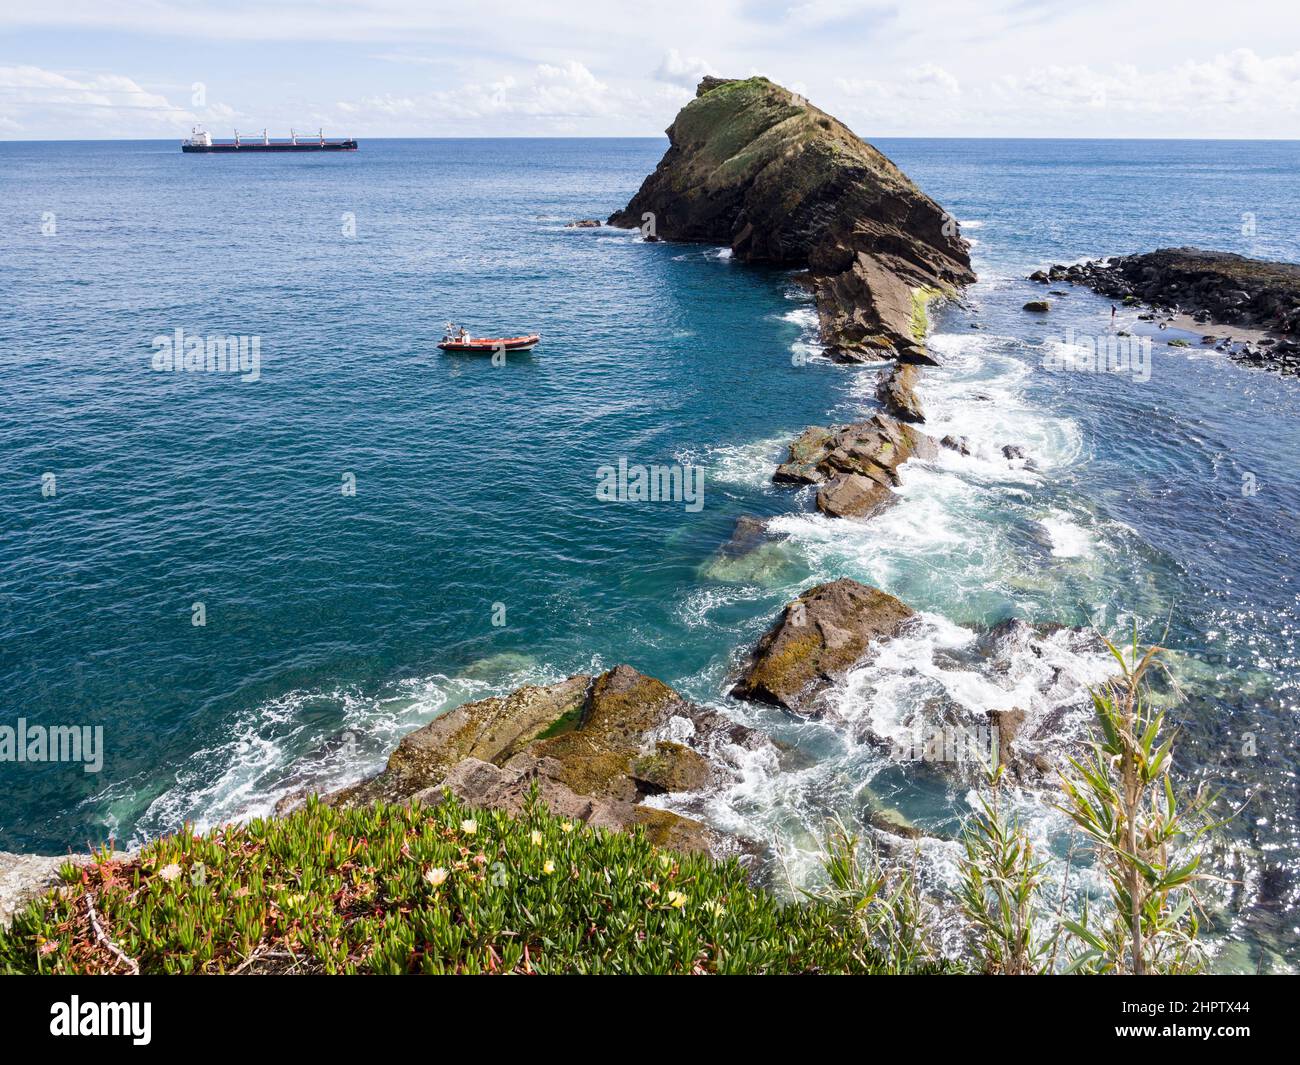 La Roca de Sao Roque: Una roca icónica se adentra en el Océano Atlántico. Un pequeño bote de pesca rojo y un gran carguero están amarrados cerca por un hombre que se desfila en una playa cercana. Foto de stock